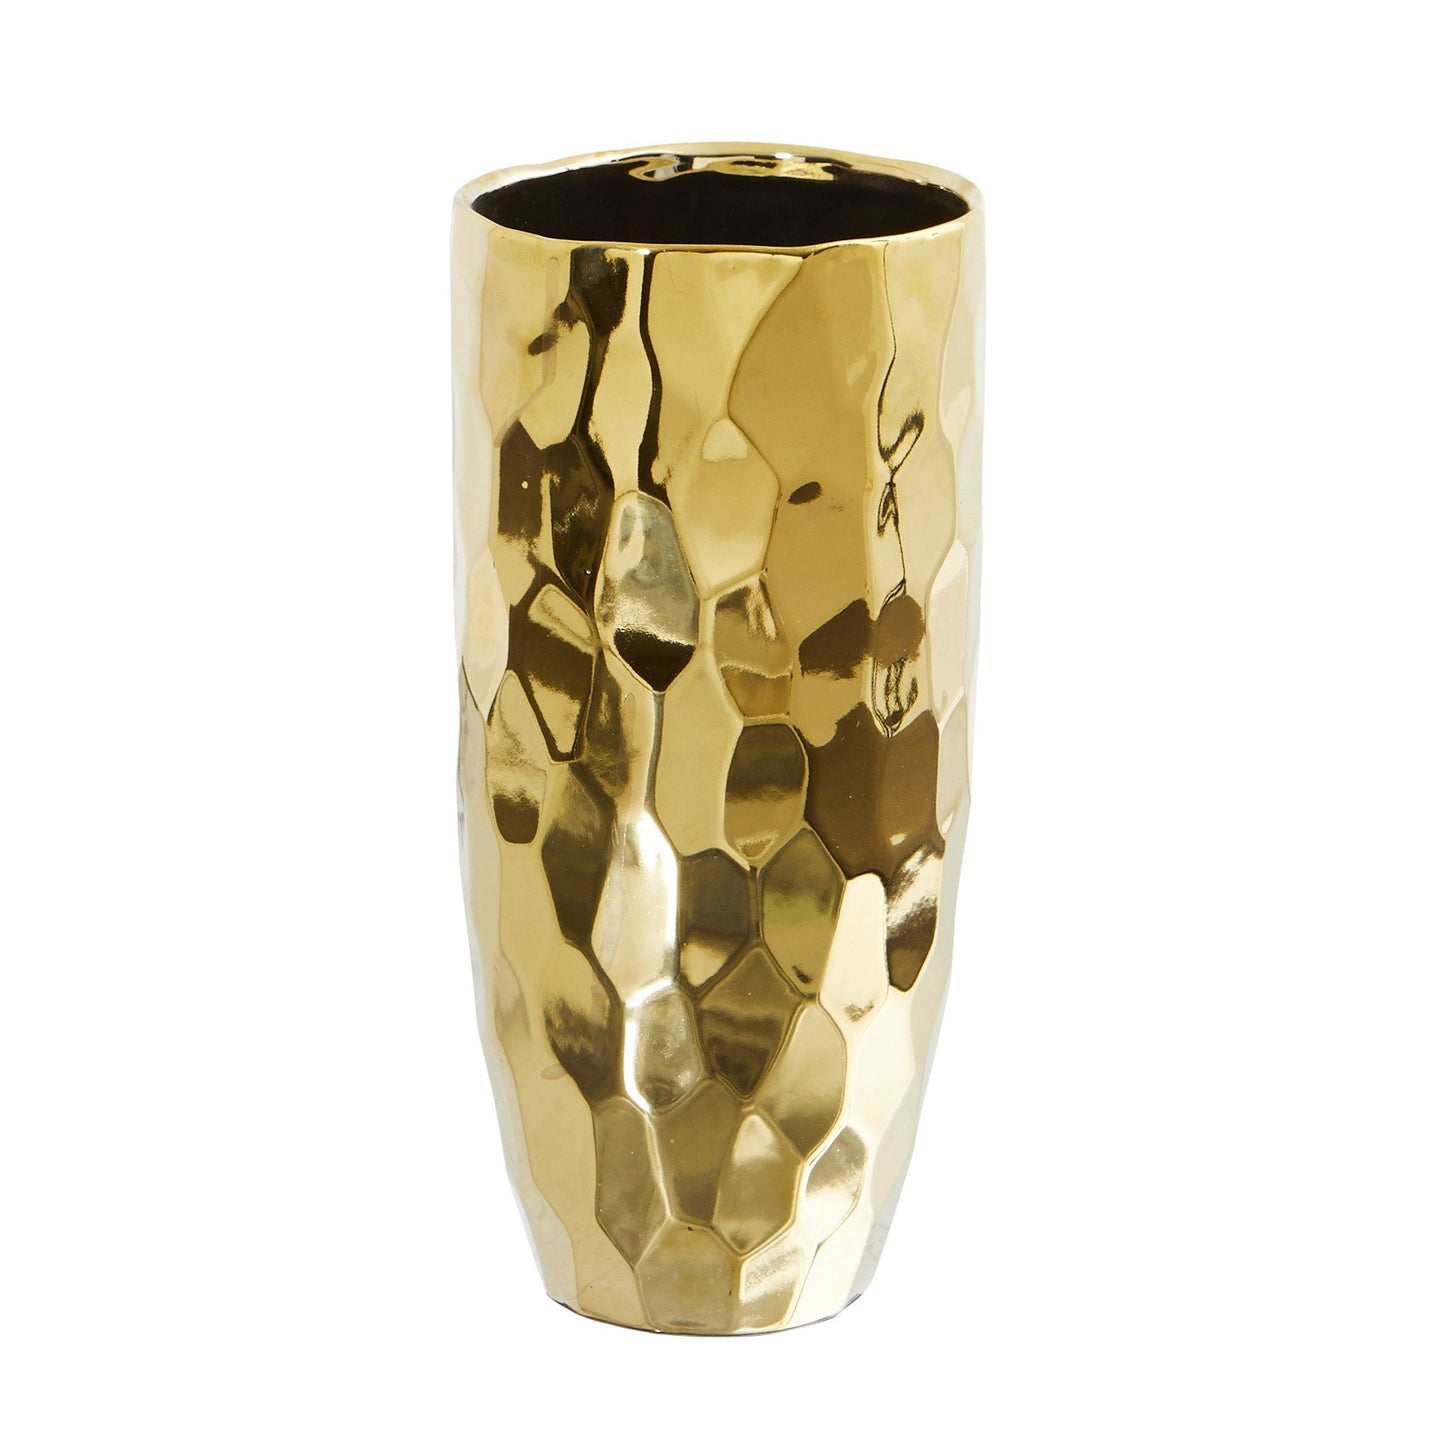 10” Designer Gold Cylinder Vase by Nearly Natural